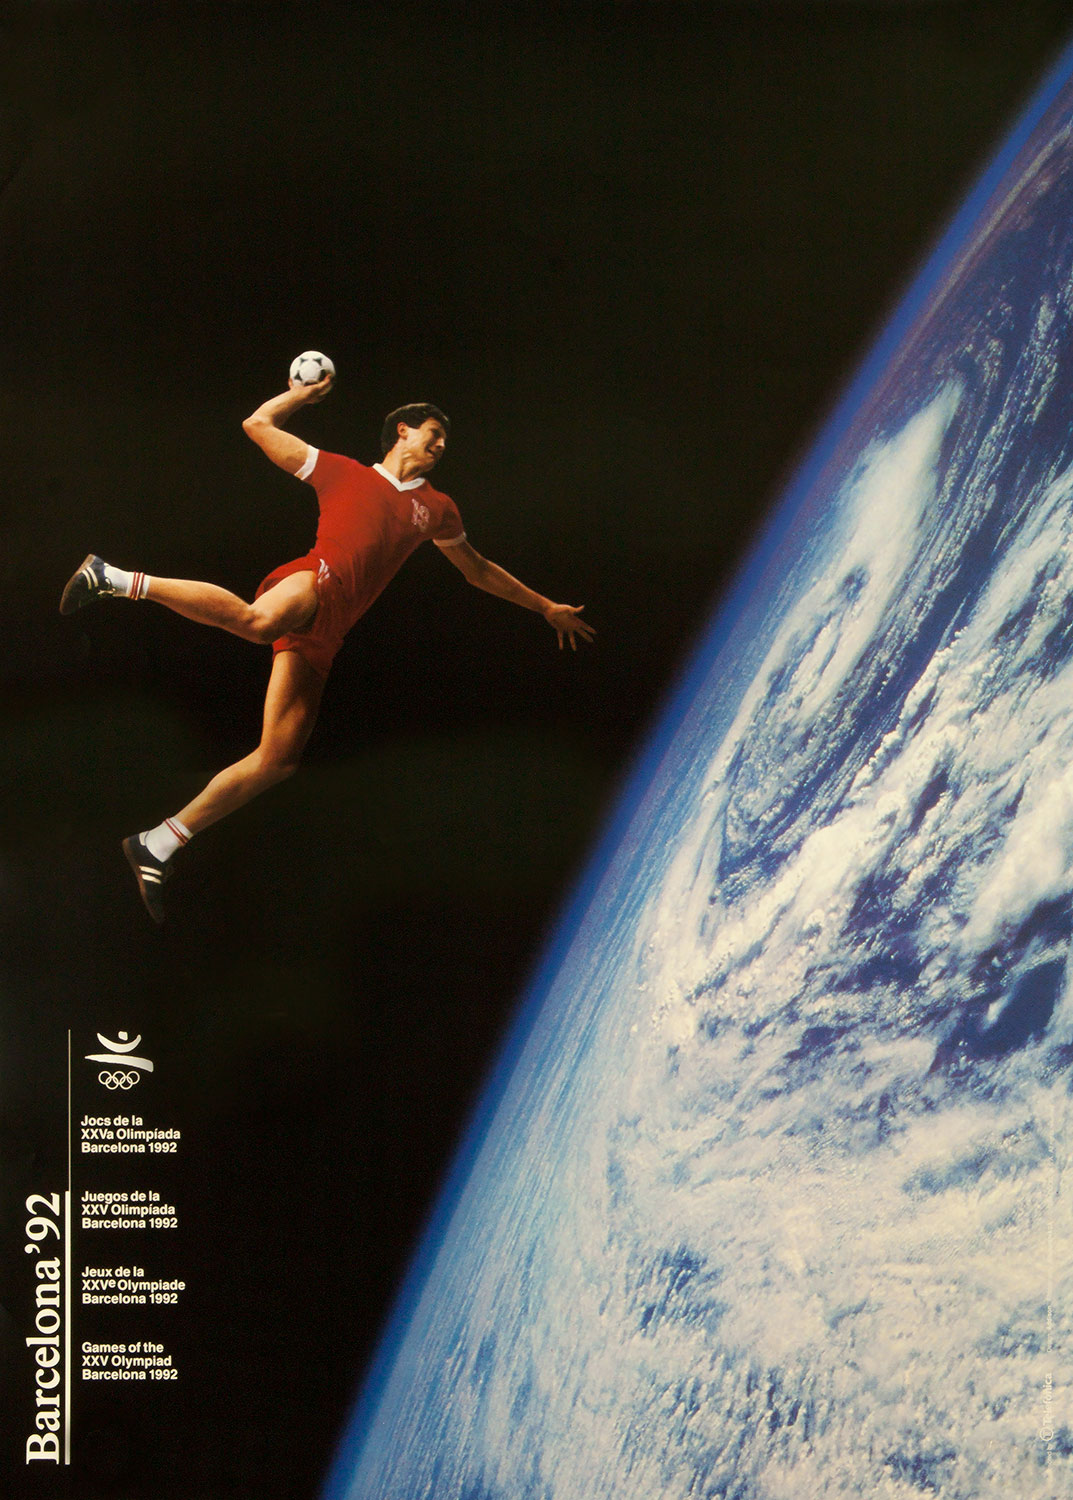 Plakat mit Abbildung eines Handballspielers. Im Hintergrund der Planet Erde